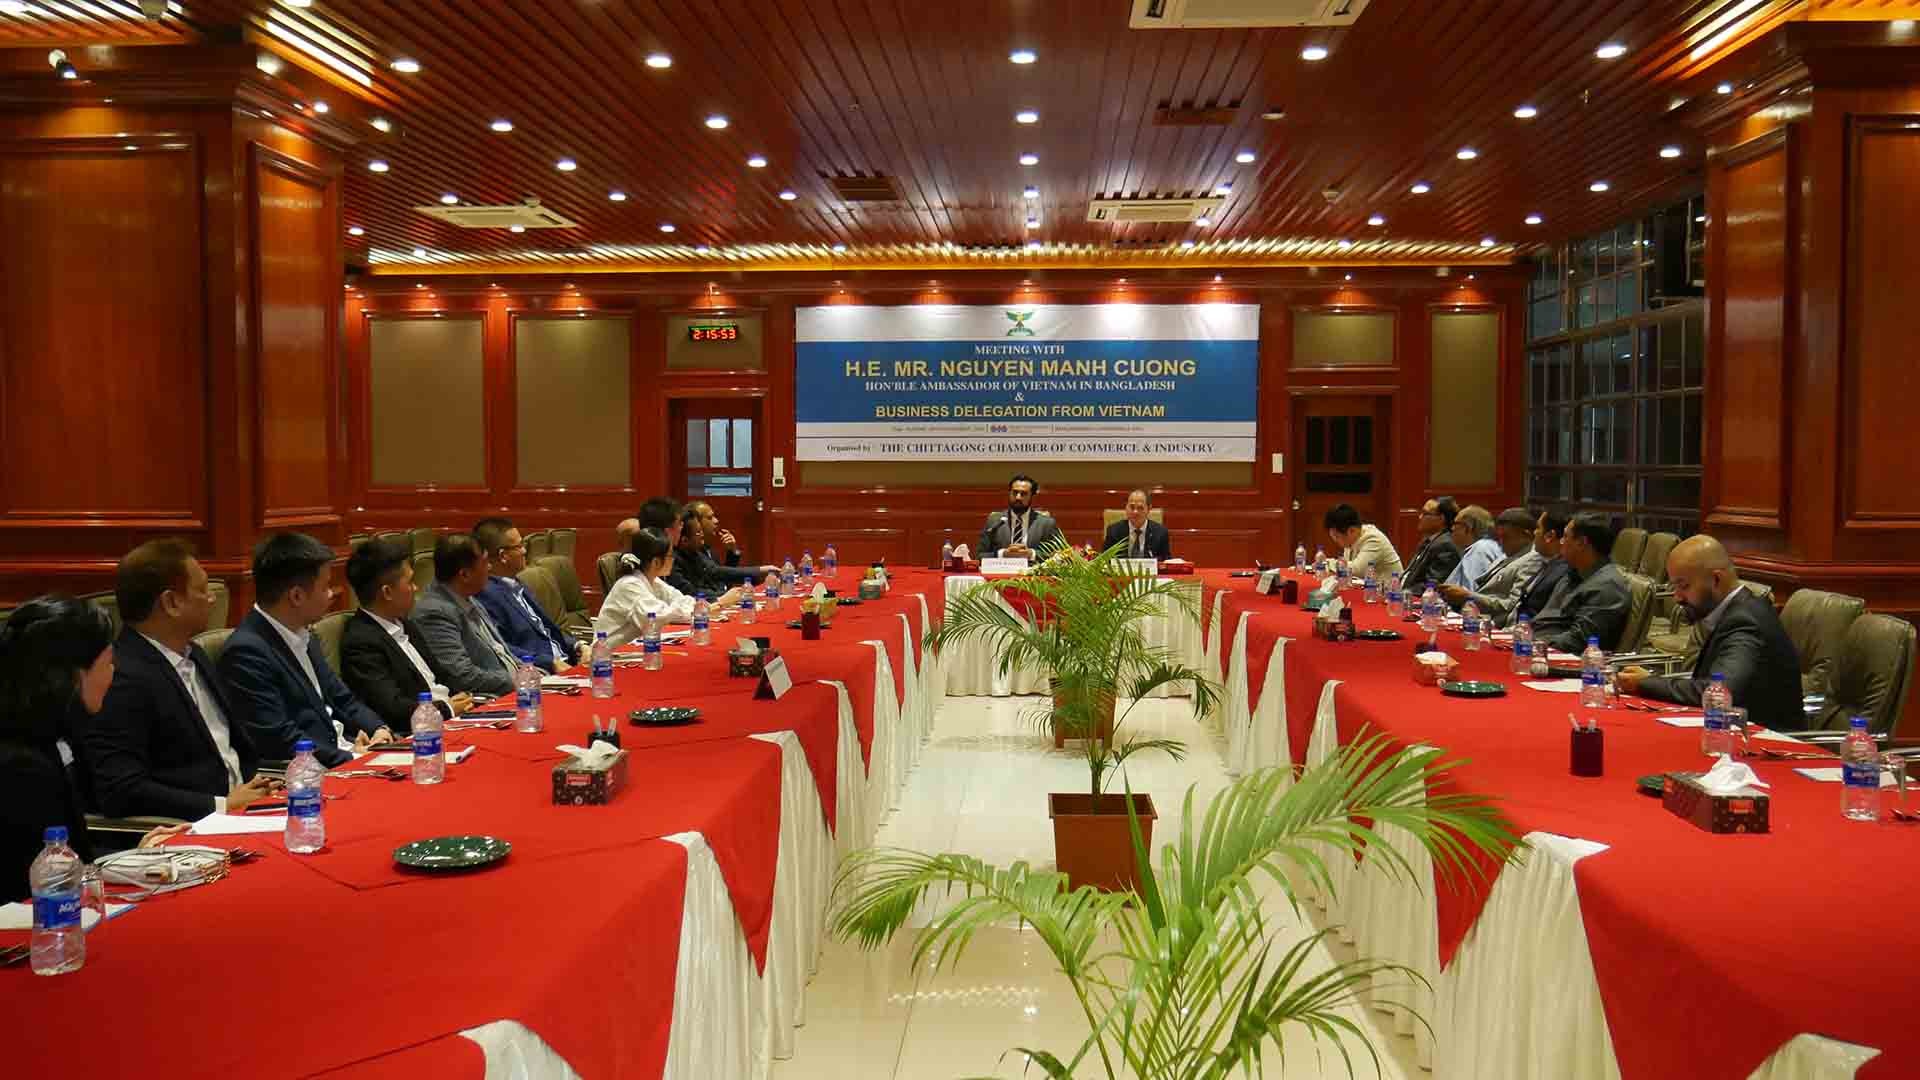 Diễn đàn chính sách xúc tiến thương mại và đầu tư giữa nhóm doanh nghiệp Việt Nam và các doanh nghiệp thành viên của CCCI.